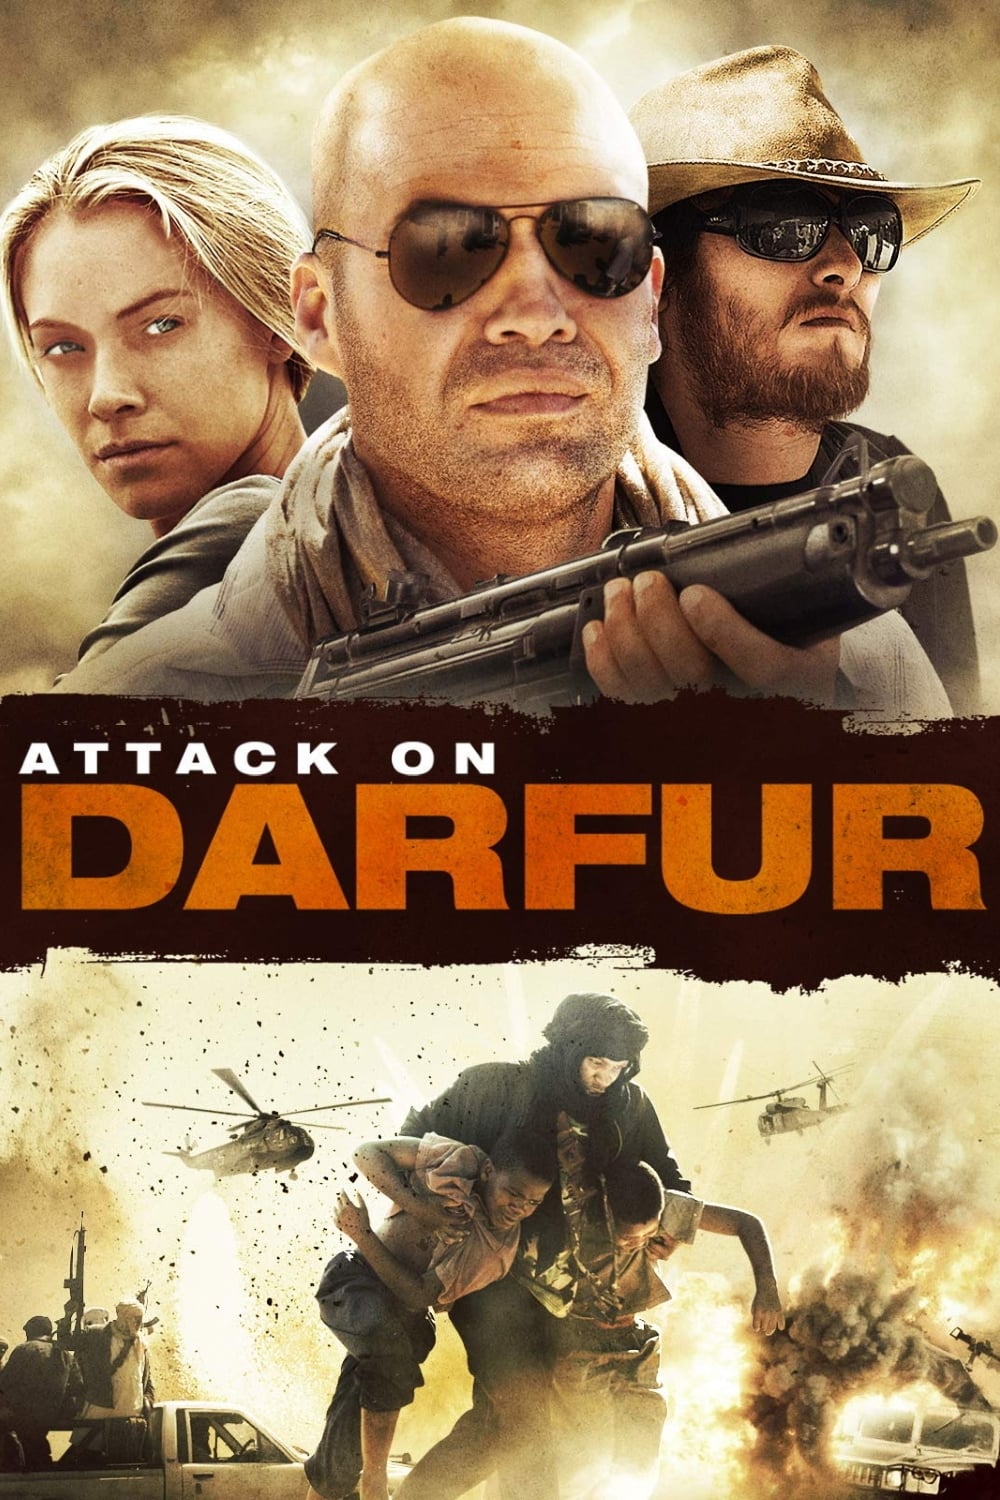 Darfur film